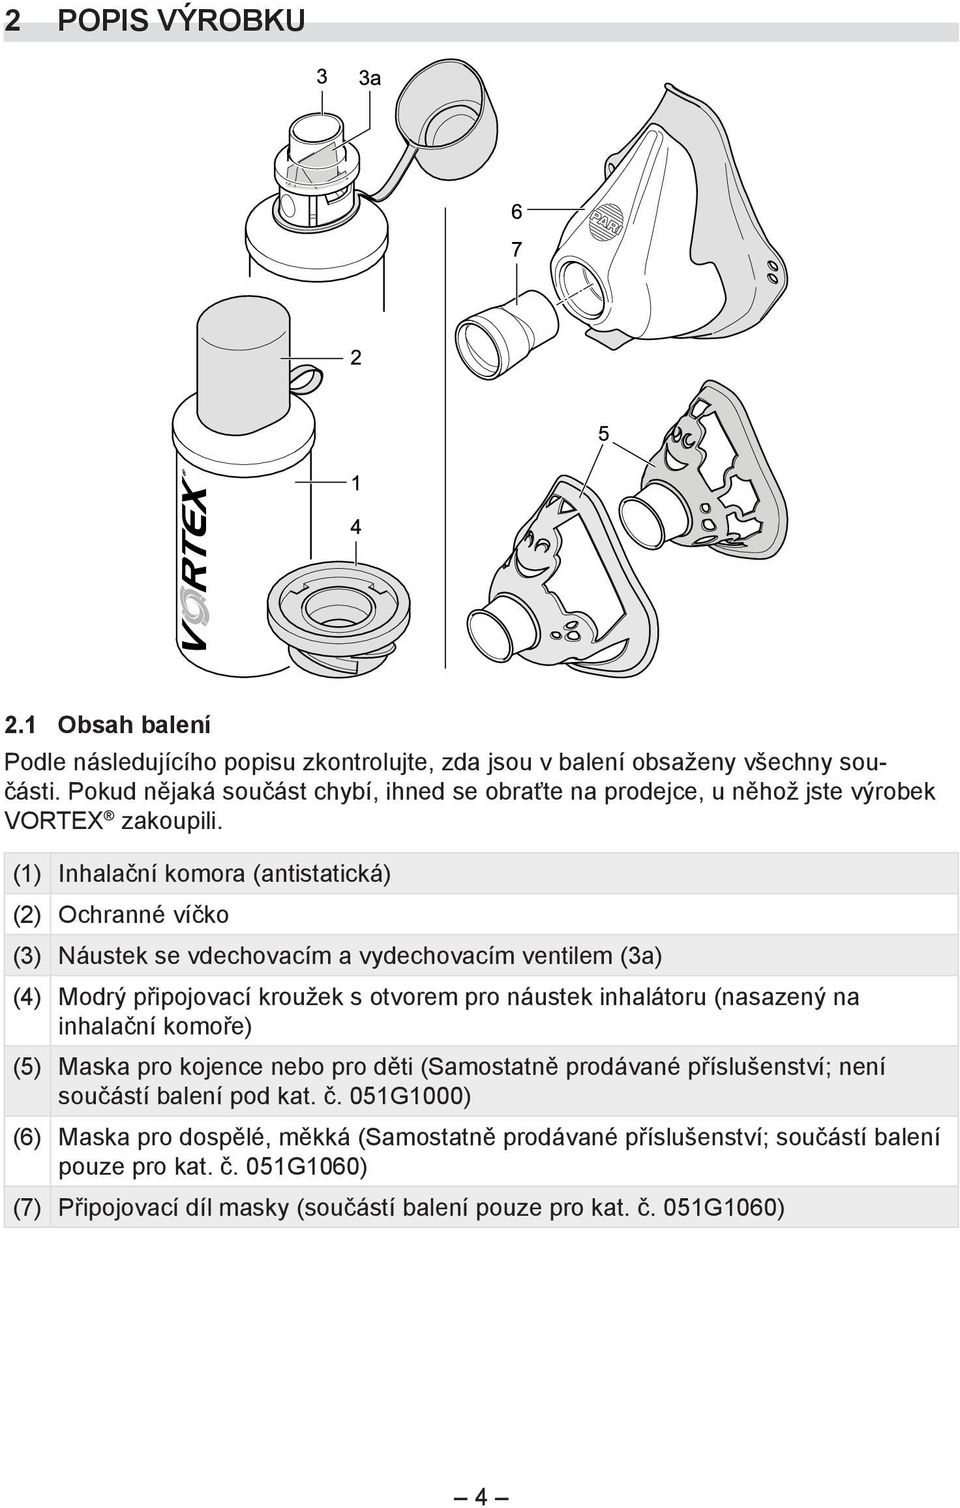 (1) Inhalační komora (antistatická) (2) Ochranné víčko (3) Náustek se vdechovacím a vydechovacím ventilem (3a) (4) Modrý připojovací kroužek s otvorem pro náustek inhalátoru